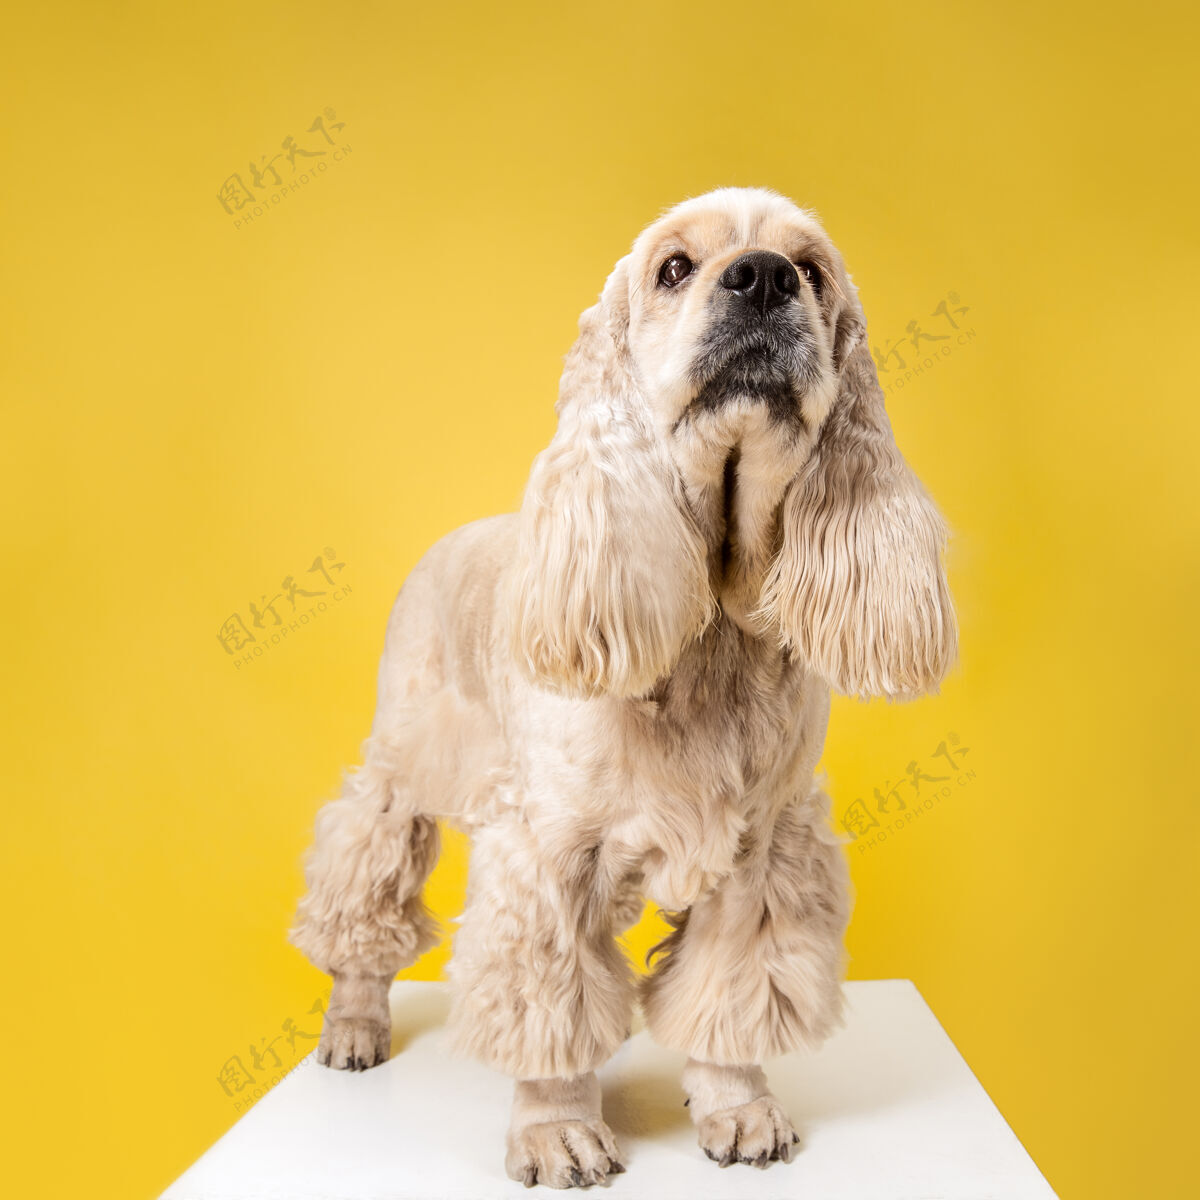 球等等我 人类美国猎犬小狗可爱的毛茸茸的小狗或宠物是坐在黄色背景孤立工作室照片负空间插入您的文字或图像动物狗有趣